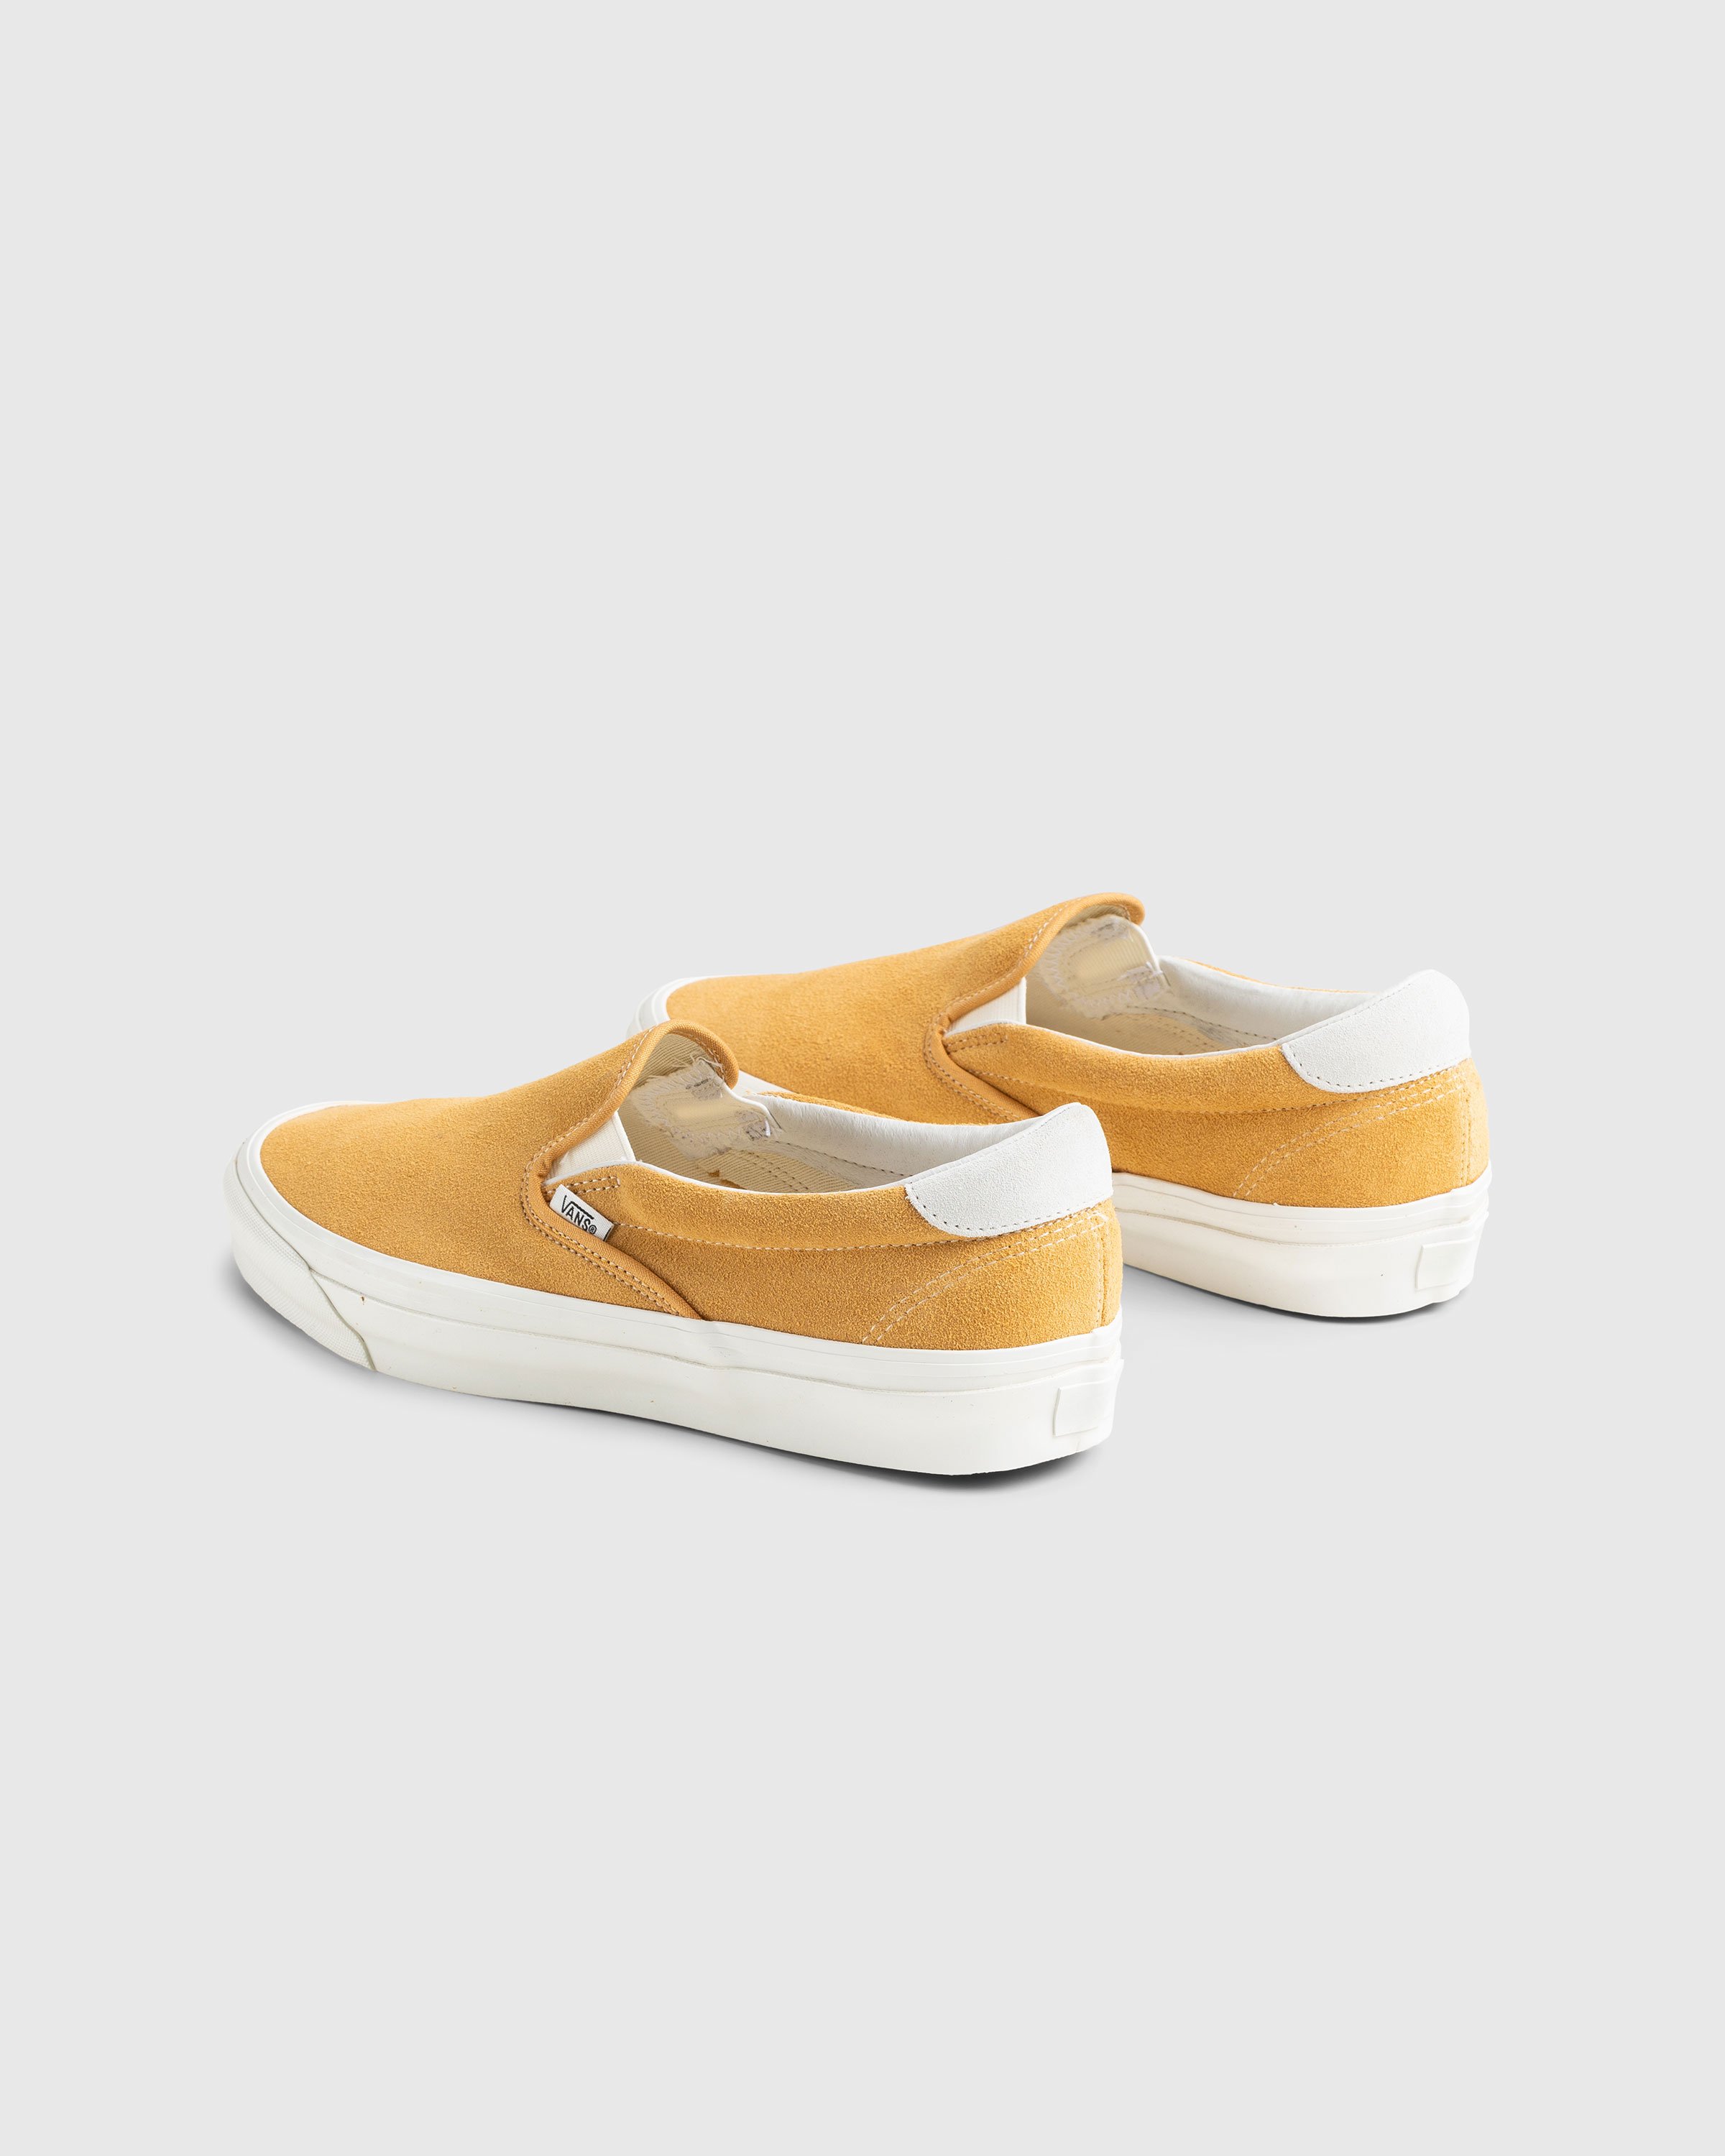 Vans - OG Slip-On 59 LX Suede Yellow - Footwear - Yellow - Image 4